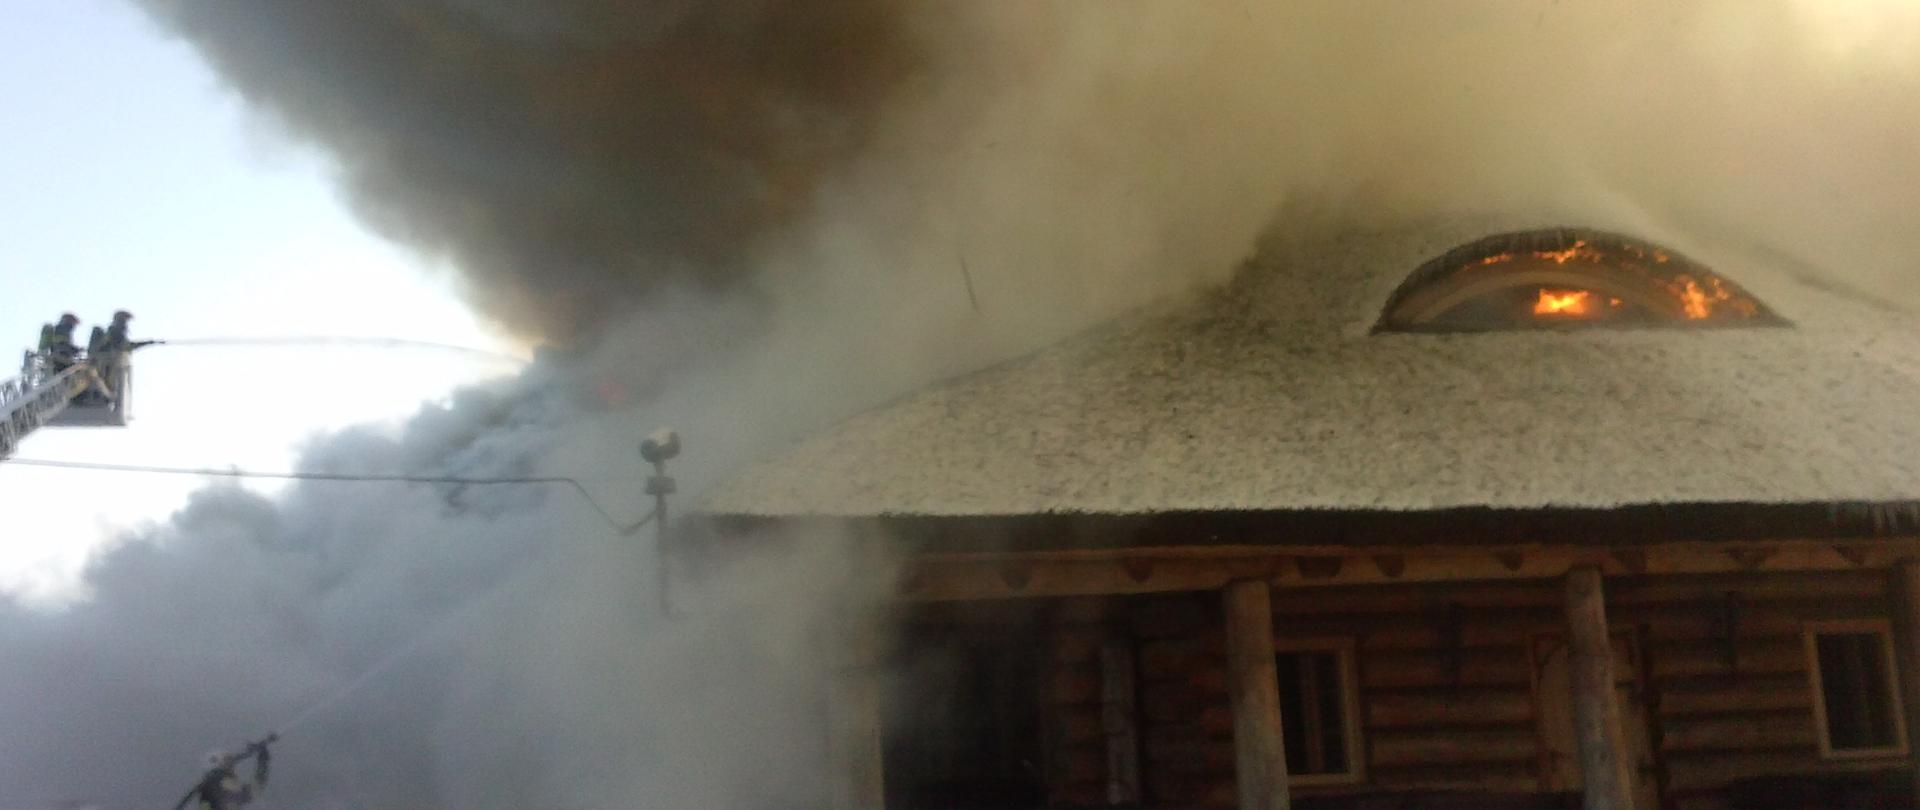 Zdjęcie przedstawia pożar budynku. Na zdjęciu widoczni są strażacy gaszący pożar. 